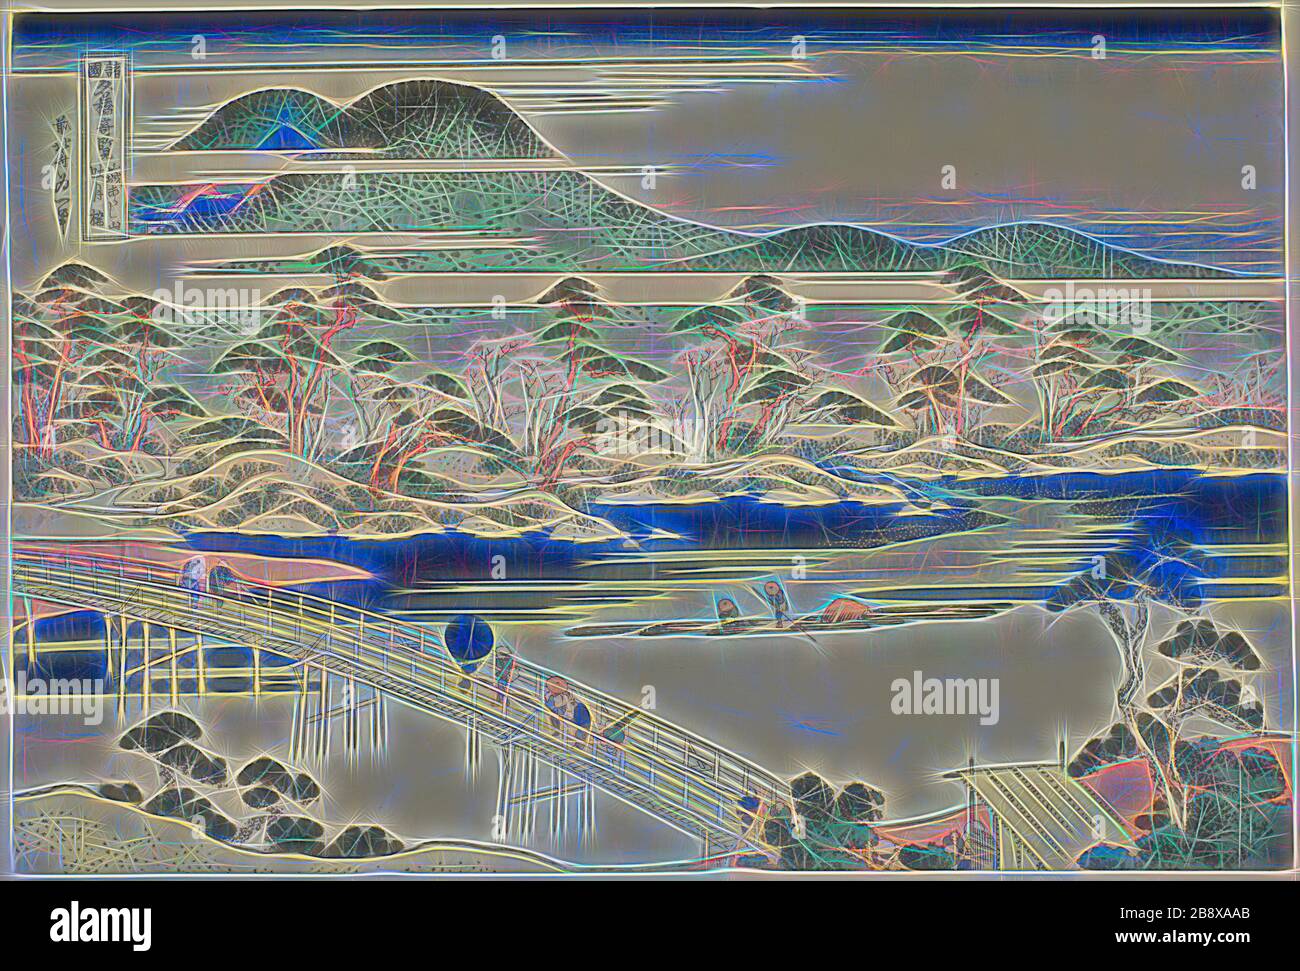 Ponte di Togetsu ad Arashiyama nella provincia di Yamashiro (Yamashiro Arashiyama no Togetsukyo), dalla serie viste insolite di ponti famosi in varie Province (Shokoku meikyo kiran), c. 1833/34, Katsushika Hokusai ?? ??, Giapponese, 1760-1849, Giappone, stampa a blocchi di legno a colori, oban, Reimagined by Gibon, disegno di un caldo e allegro bagliore di luminosità e di radianza di raggi di luce. Arte classica reinventata con un tocco moderno. La fotografia ispirata al futurismo, che abbraccia l'energia dinamica della tecnologia moderna, del movimento, della velocità e rivoluziona la cultura. Foto Stock